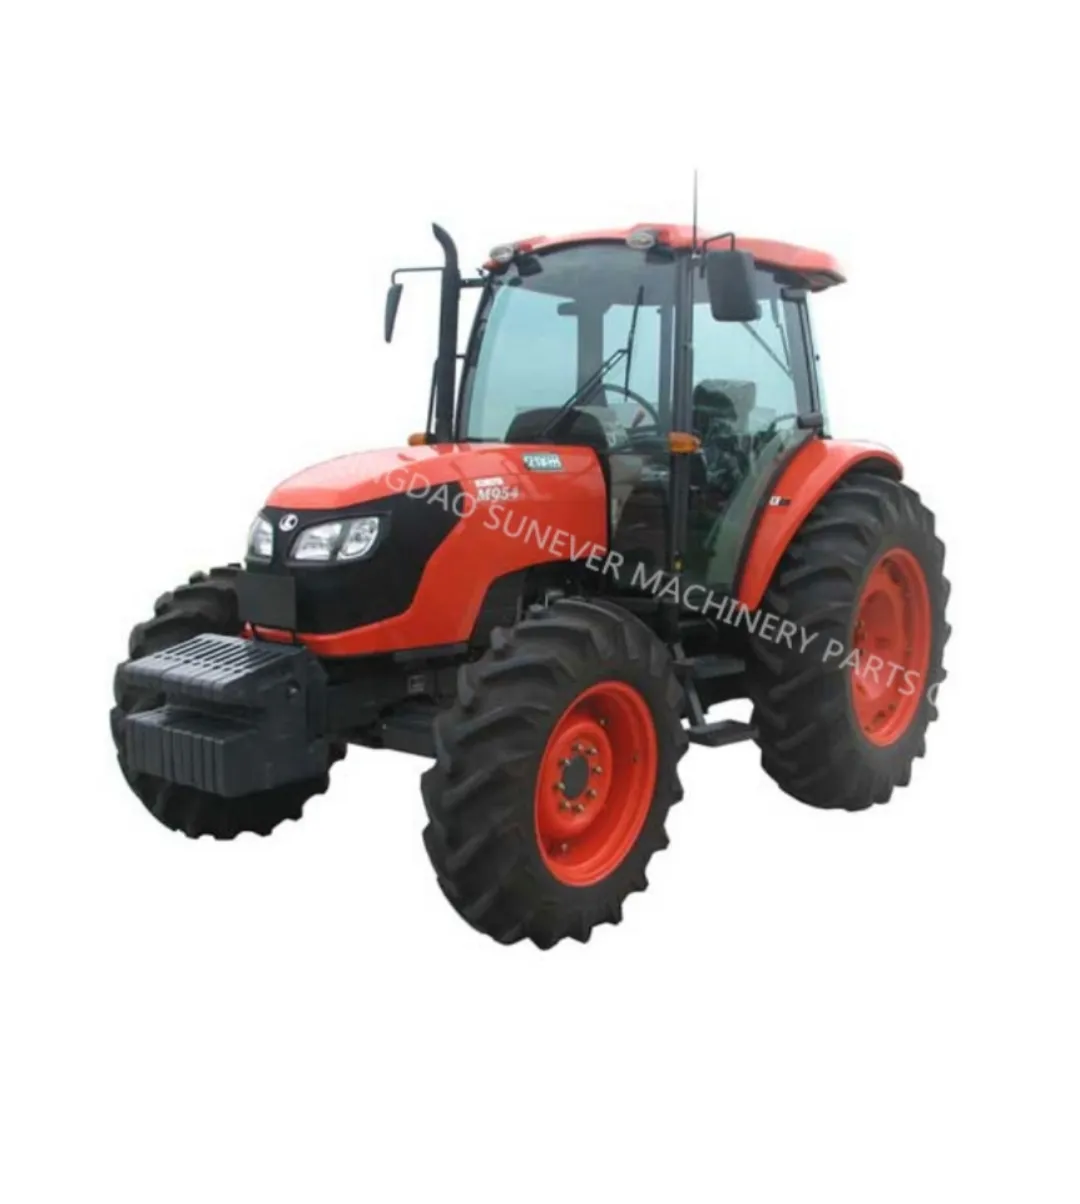 Gebruikt Farm Kubota Tractor M9540 Gemaakt In Japan Voor Verkoop